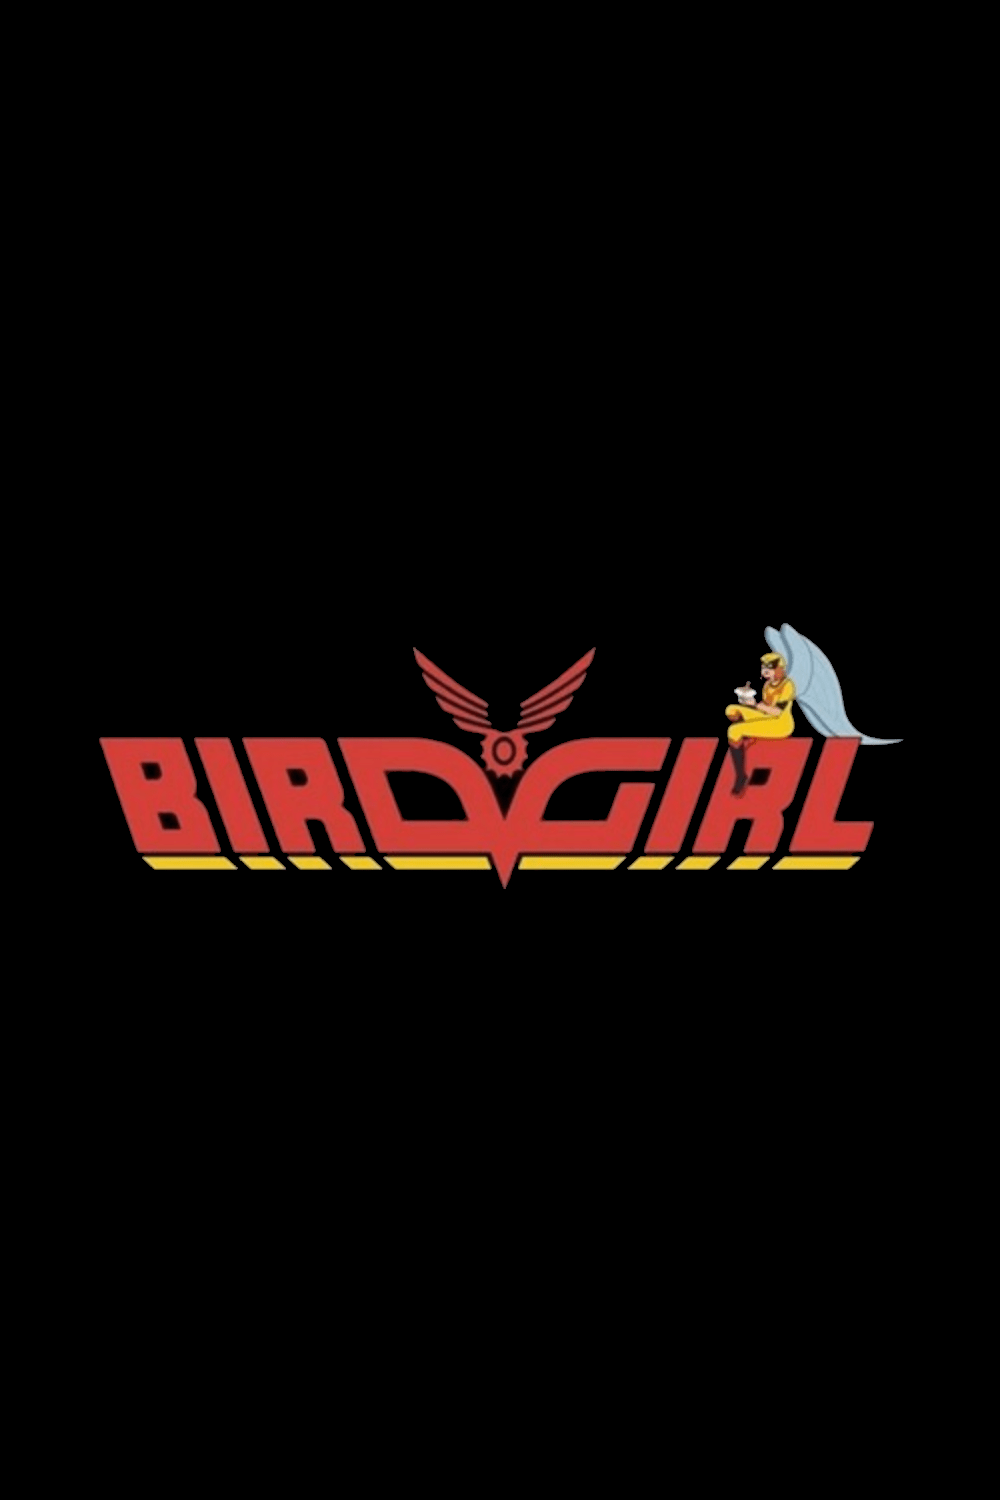 دانلود سریال Birdgirl